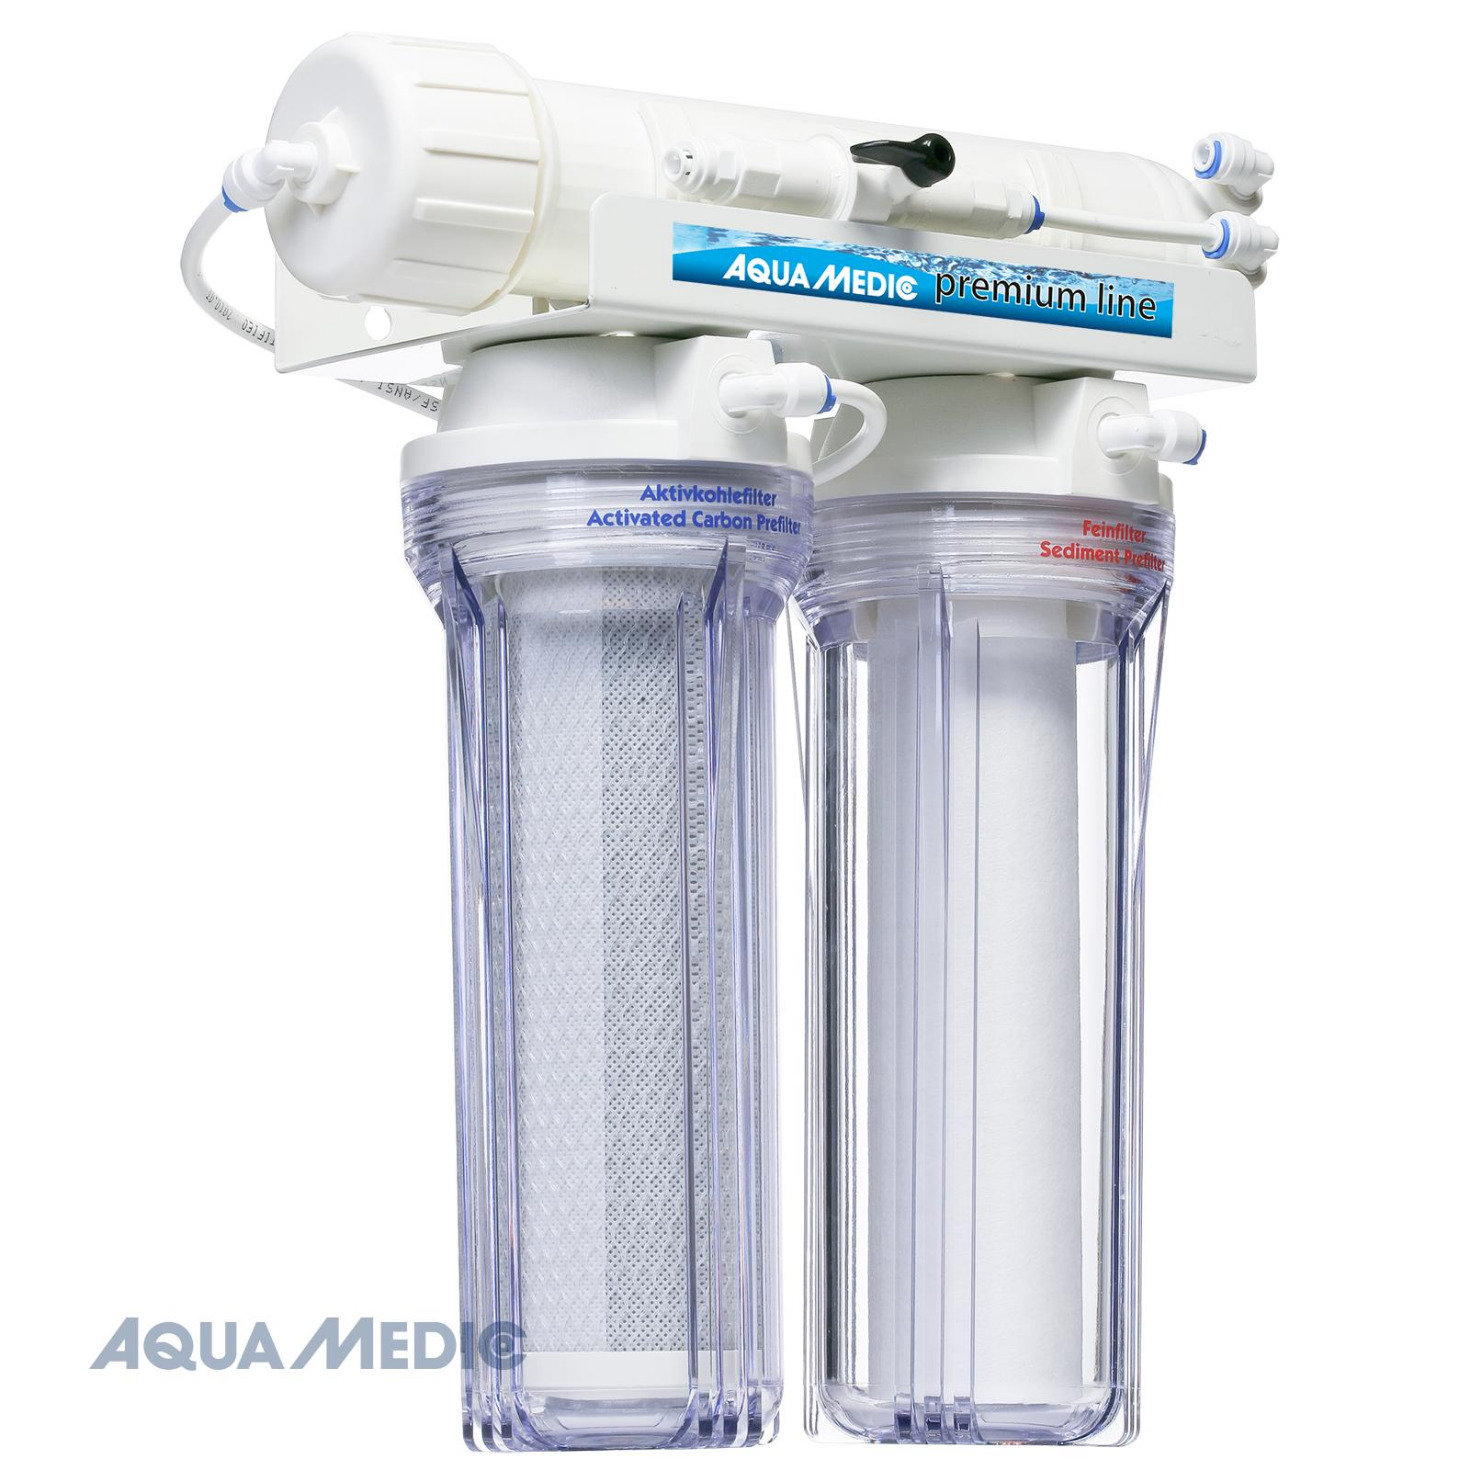 Aqua Medic premium line 190